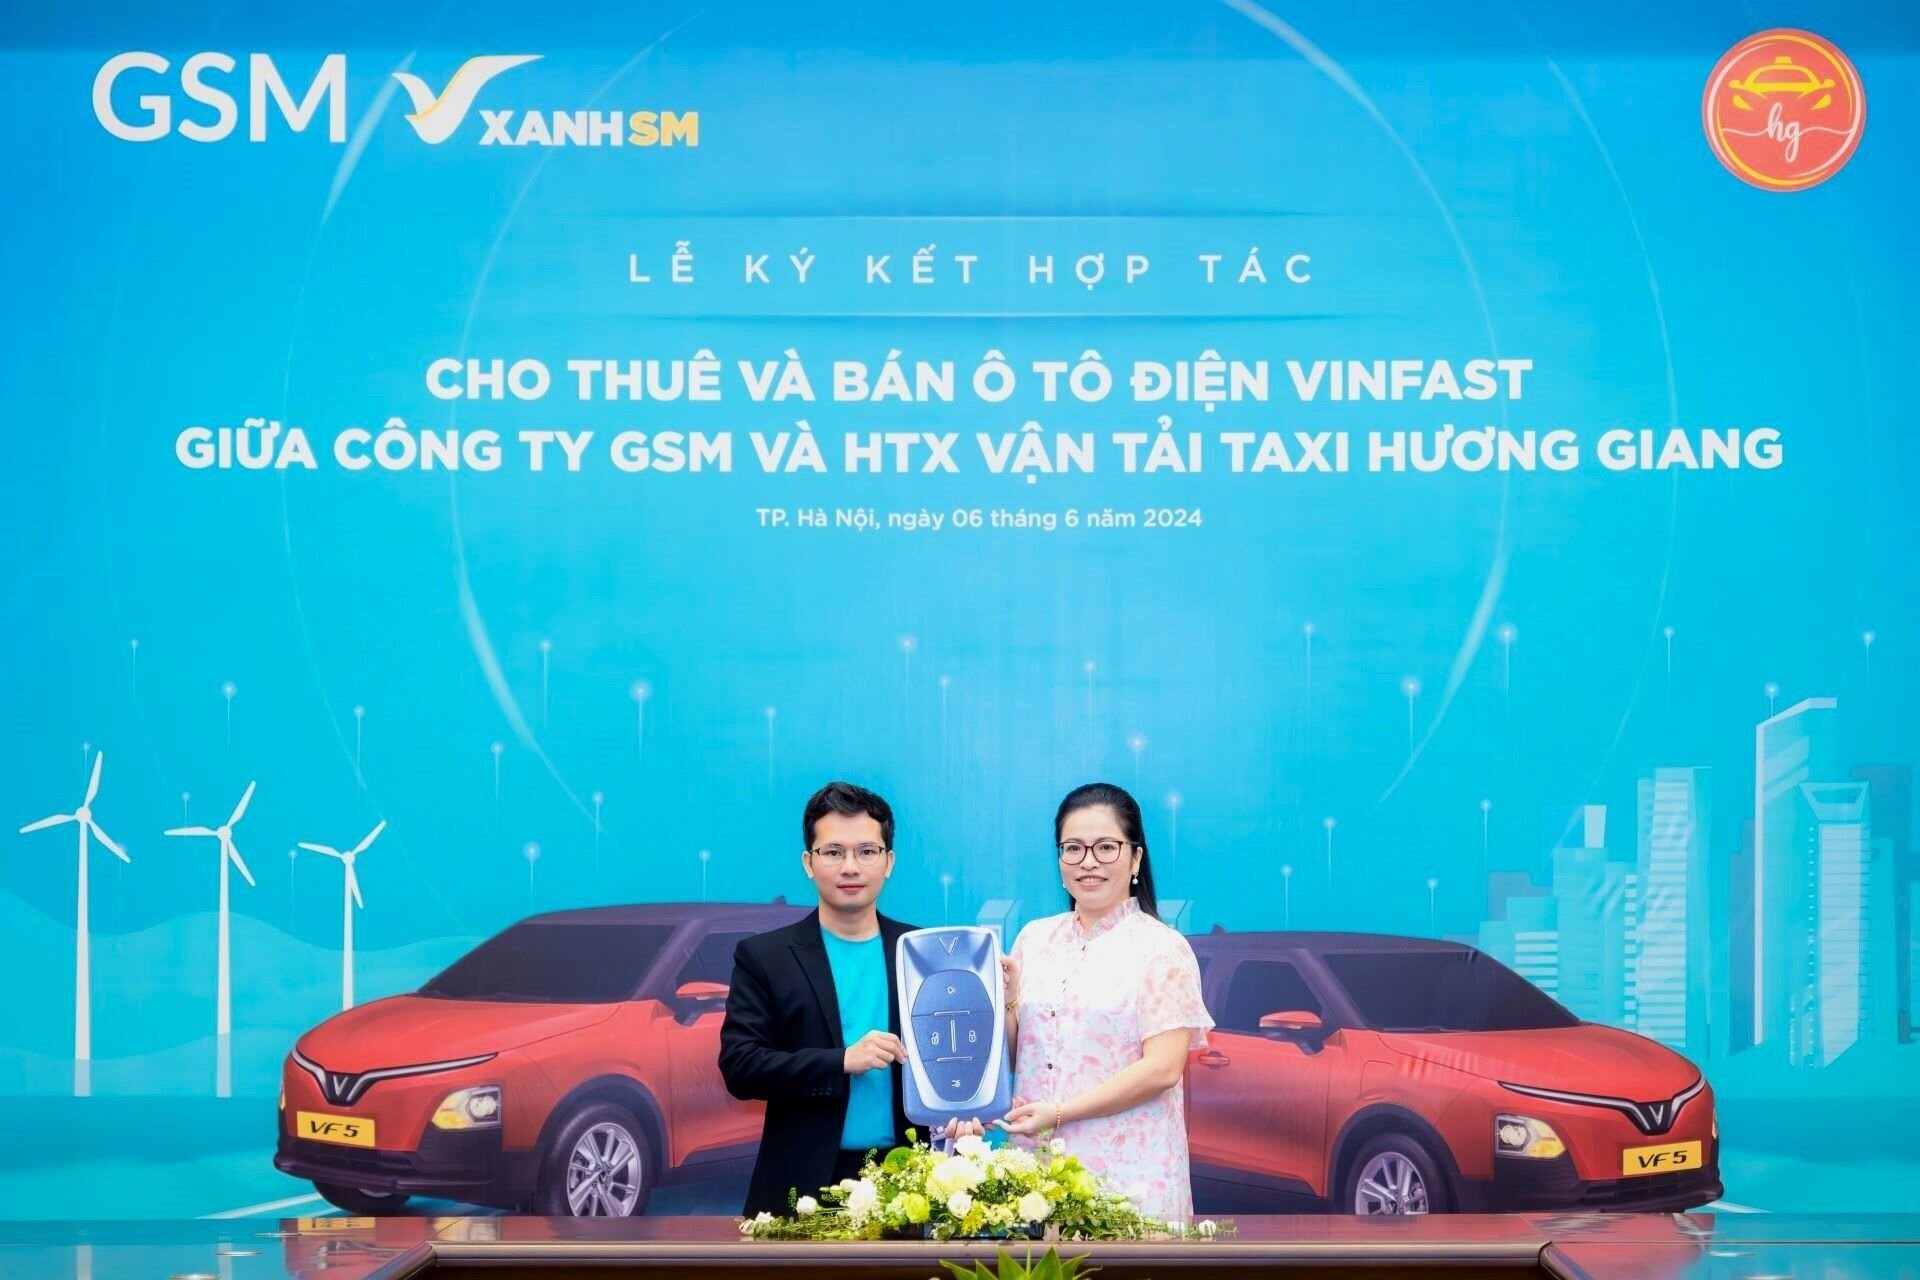 Thêm hai đối tác độc quyền của Xanh SM triển khai taxi điện ở Bắc Giang, Cà Mau